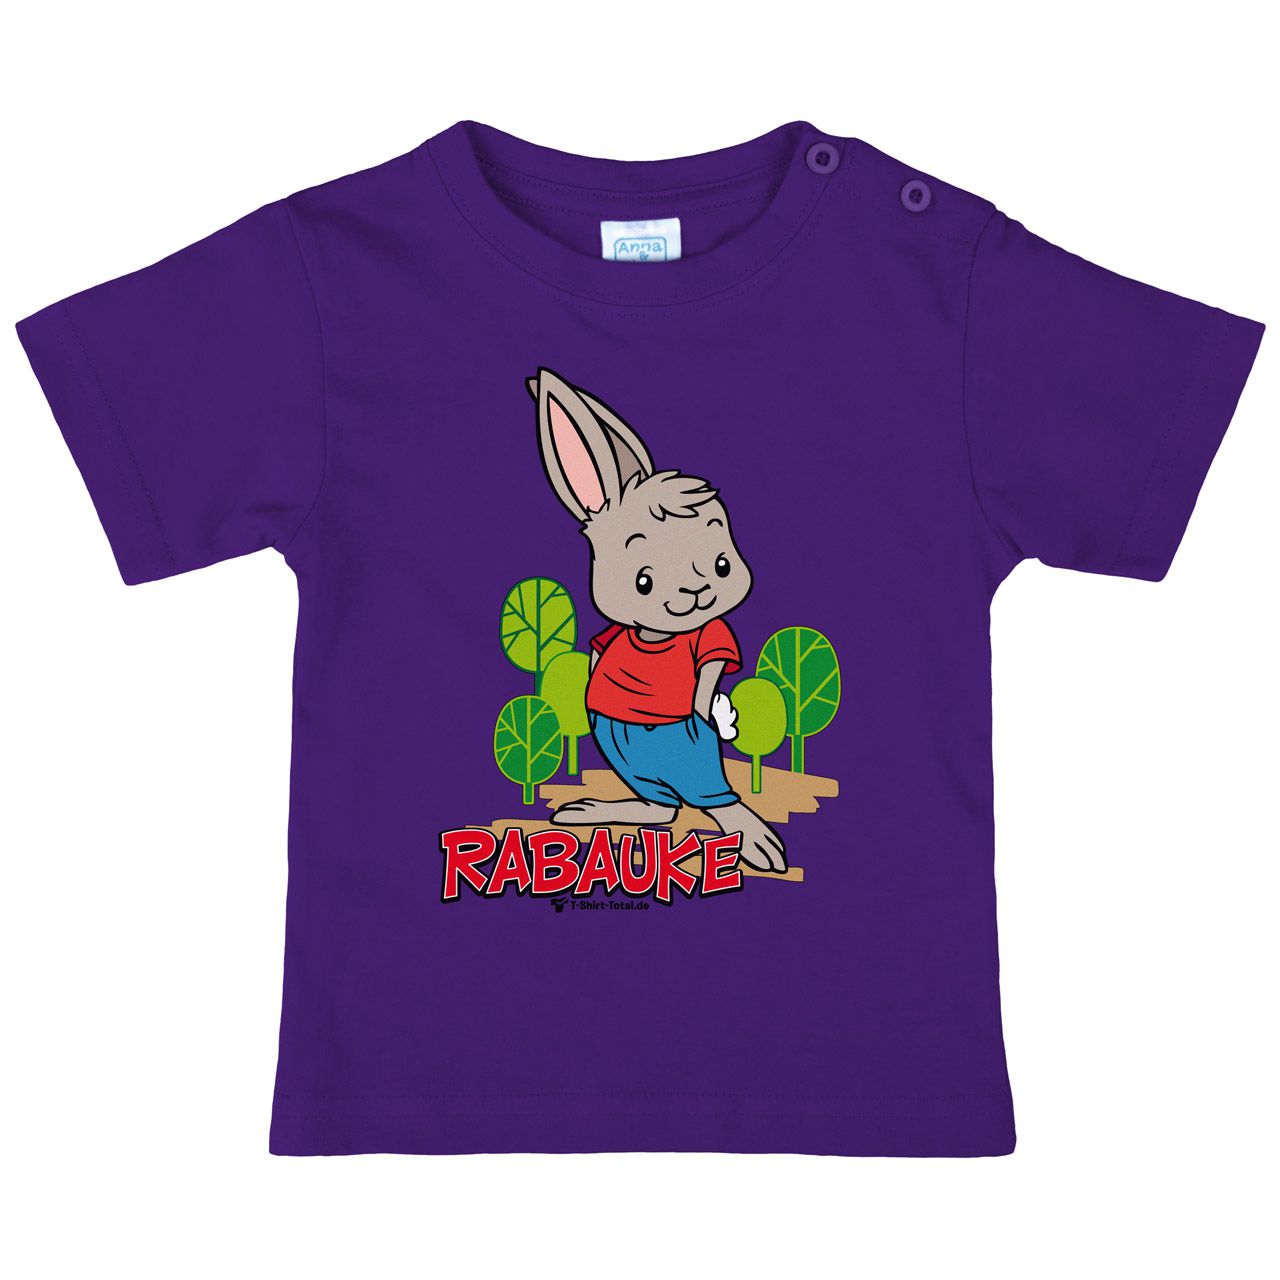 Rabauke Kinder T-Shirt lila 110 / 116